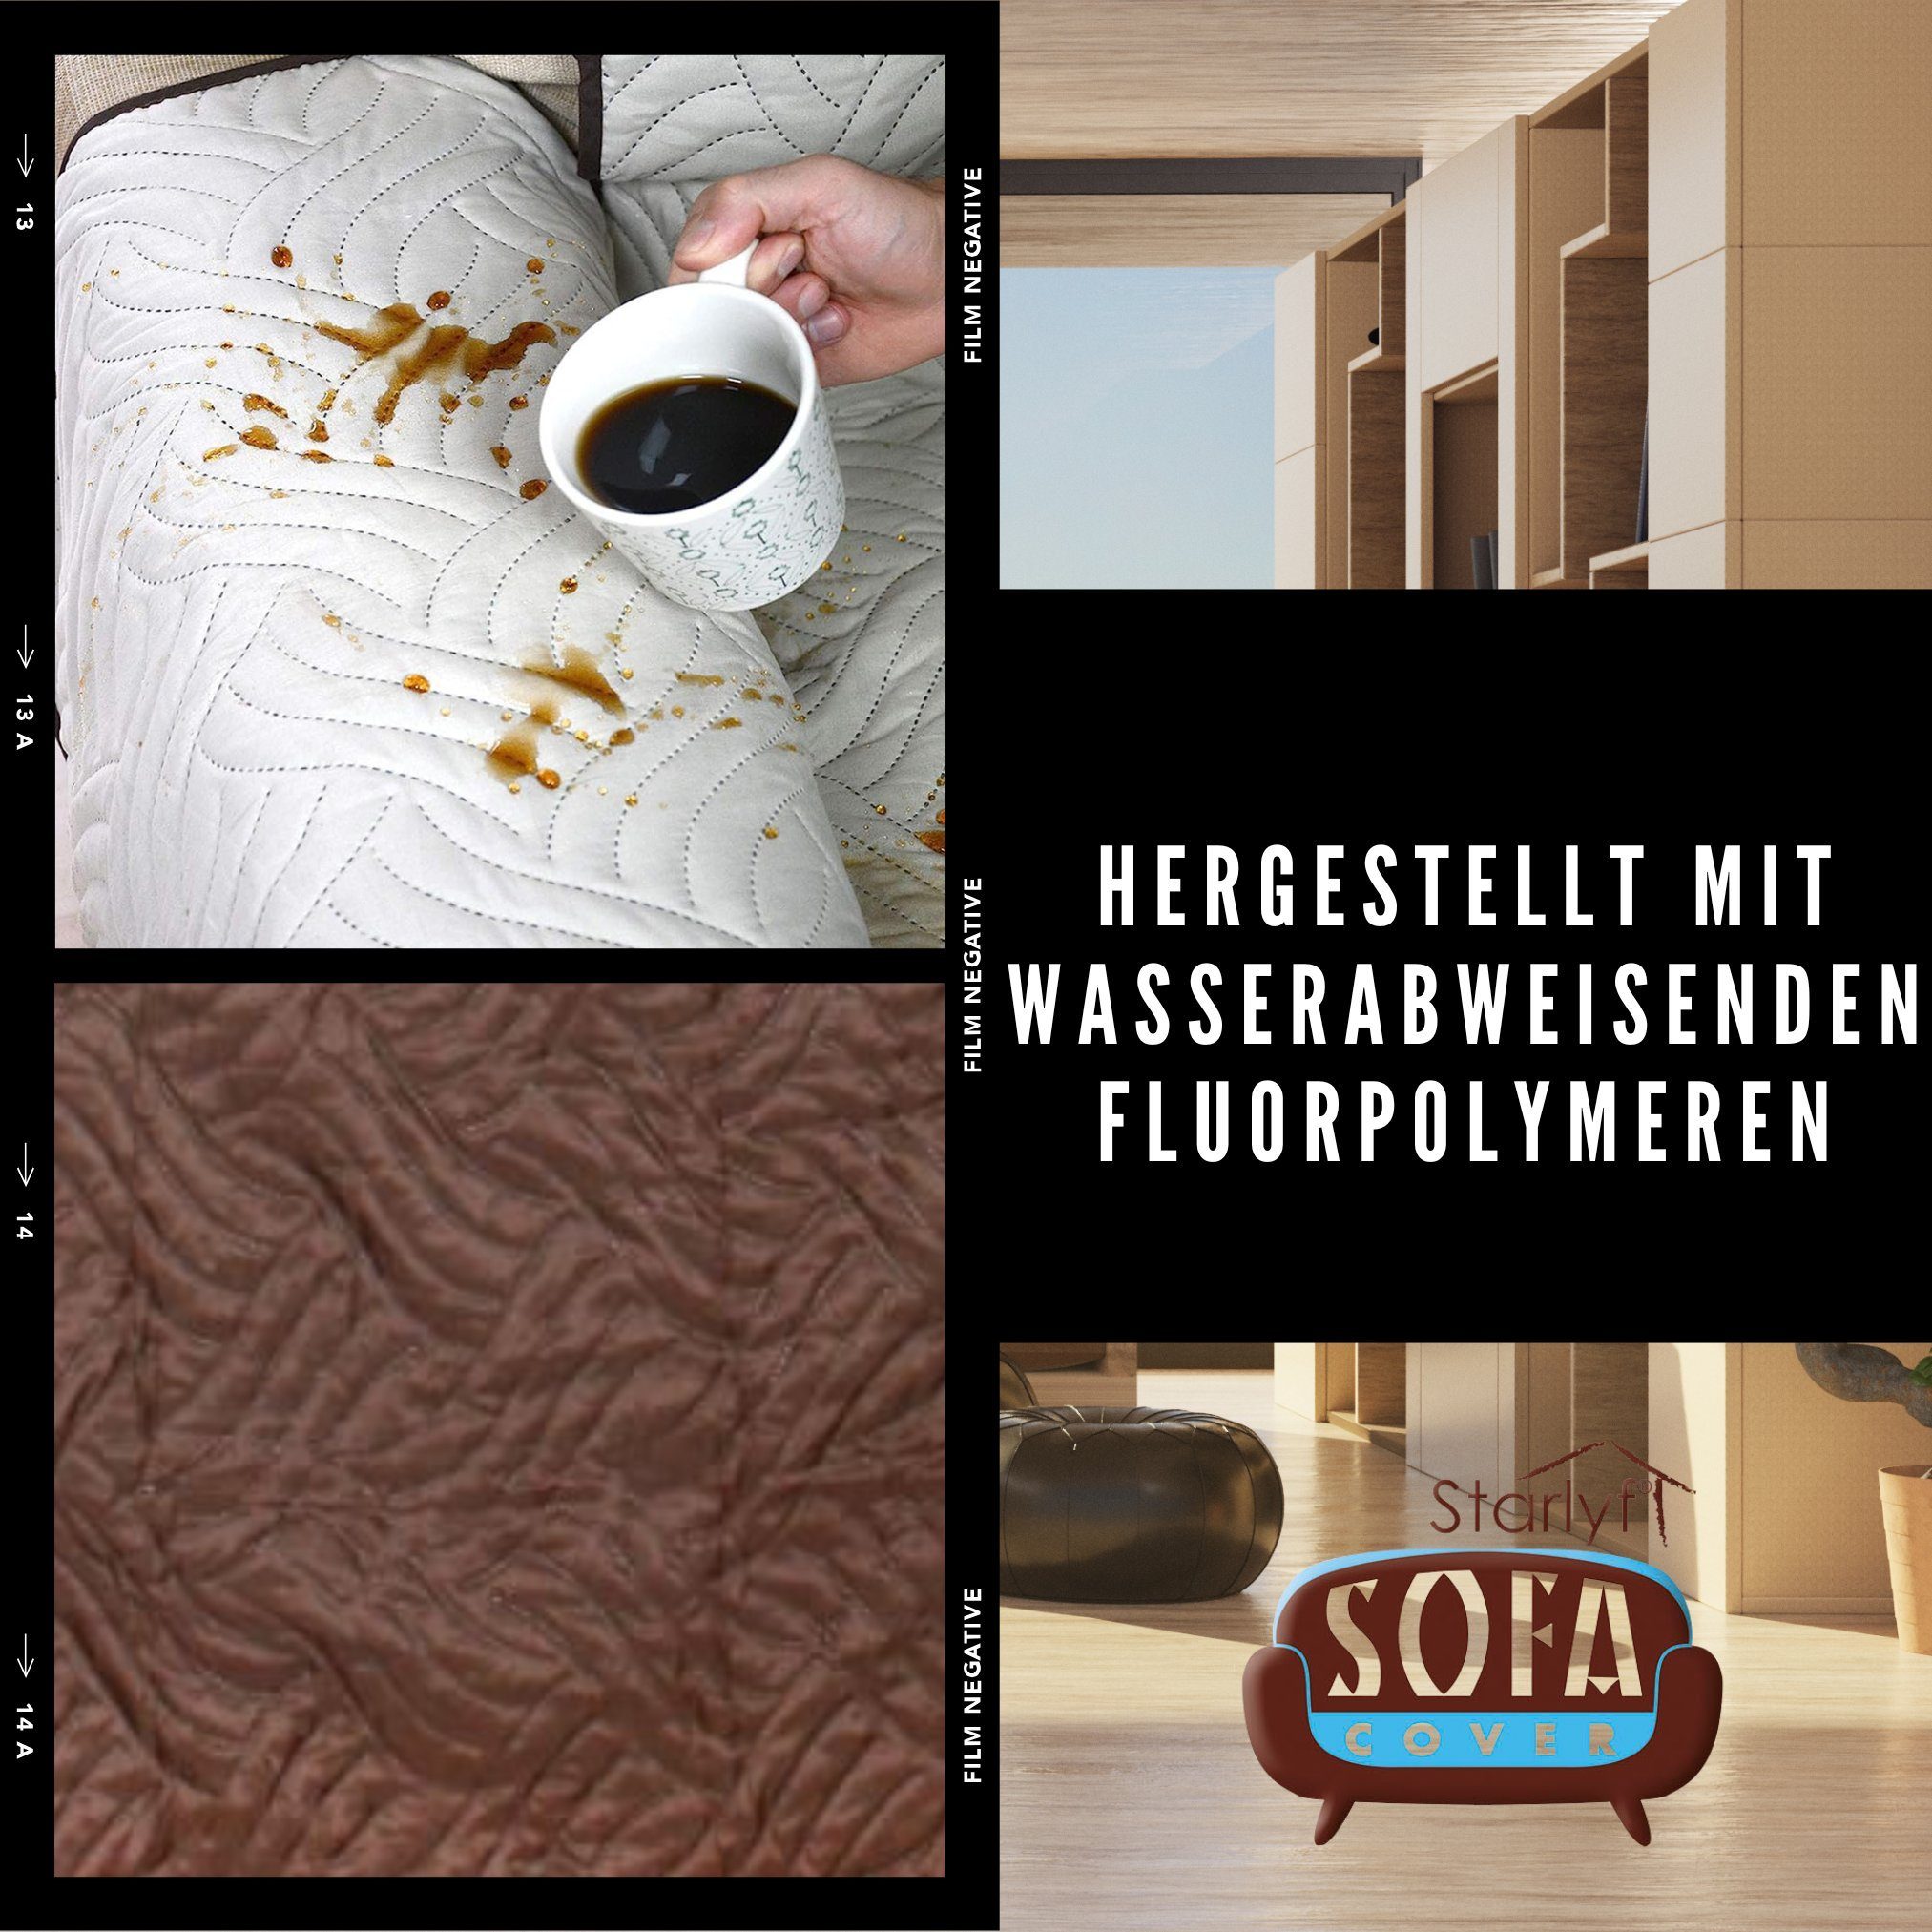 Sofaschoner Sofa wasserabweisend, Starlyf, Sofahusse Cover oder Sesselbezug schwarz/grau wendbar, Sofabezug